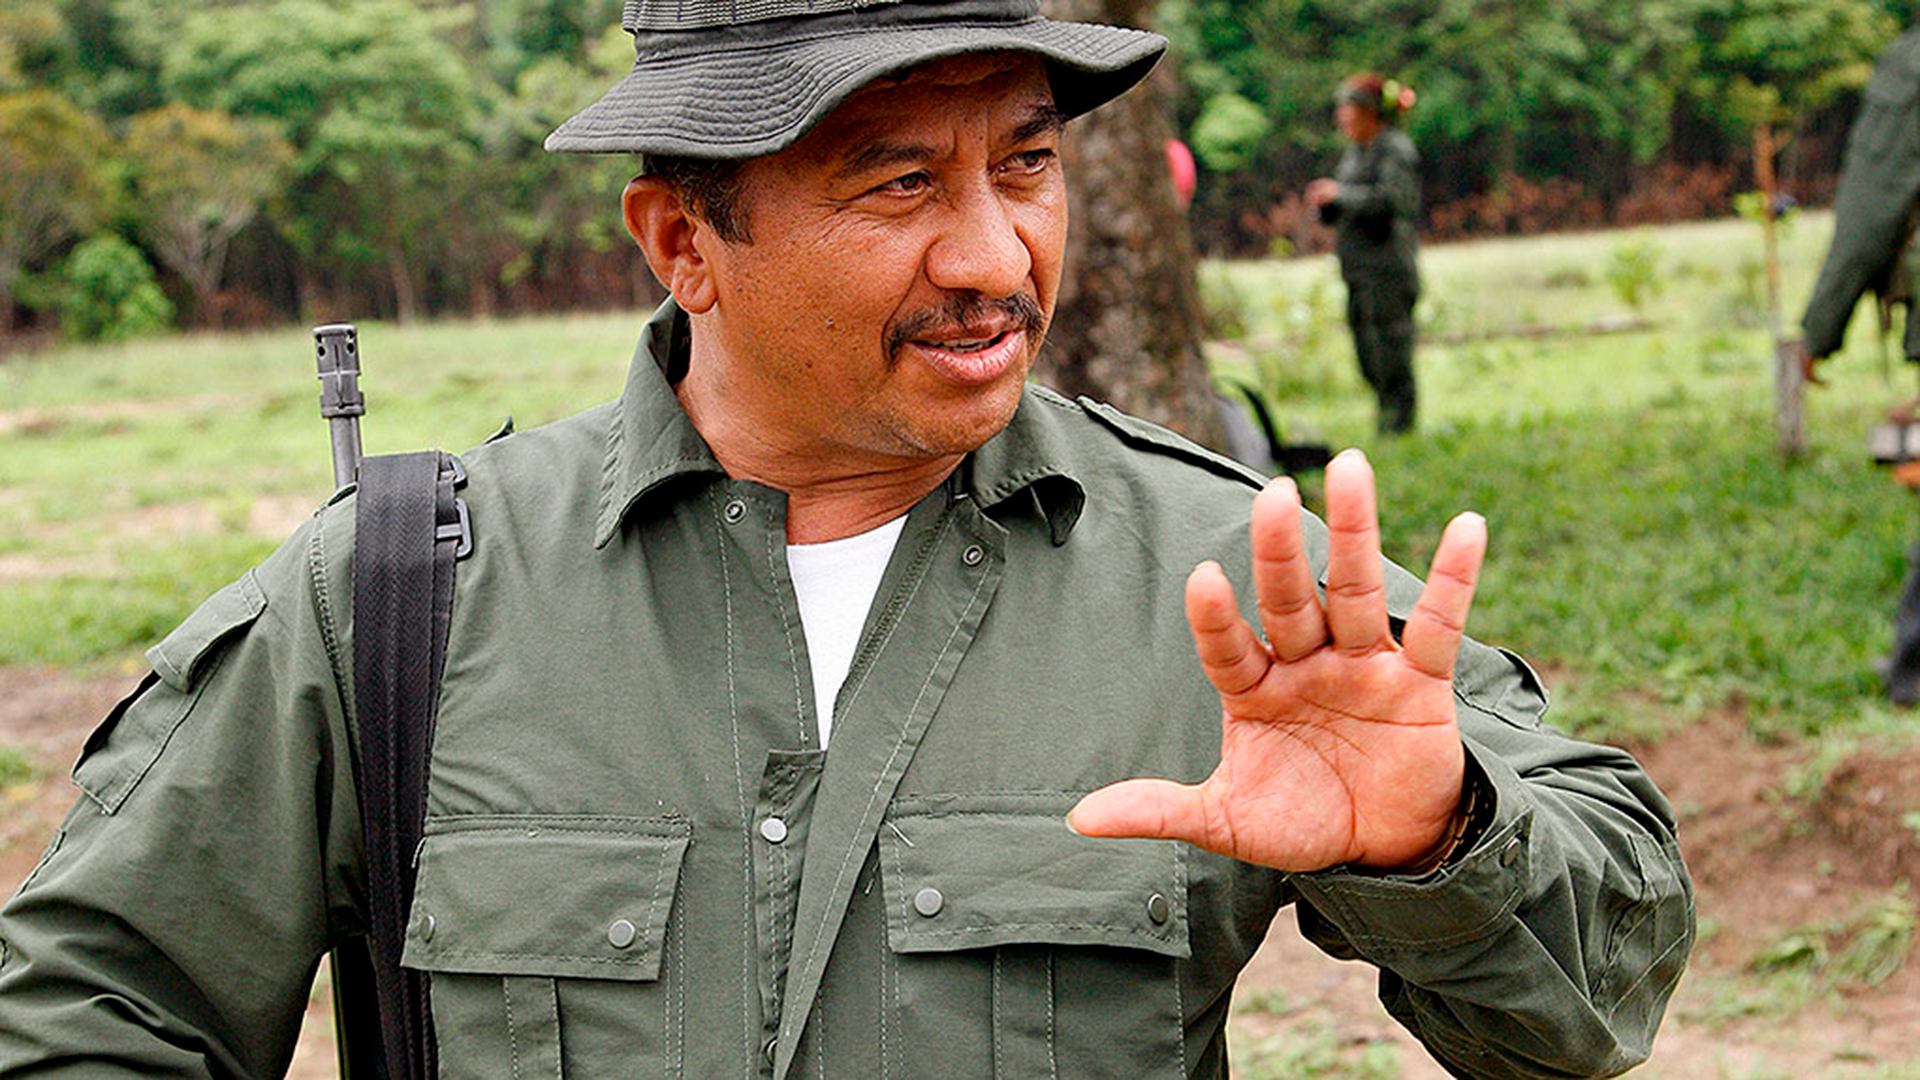 Gentil Duarte líder del Bloque Oriental, el grupo disidente de FARC más grande y peligroso de Colombia.